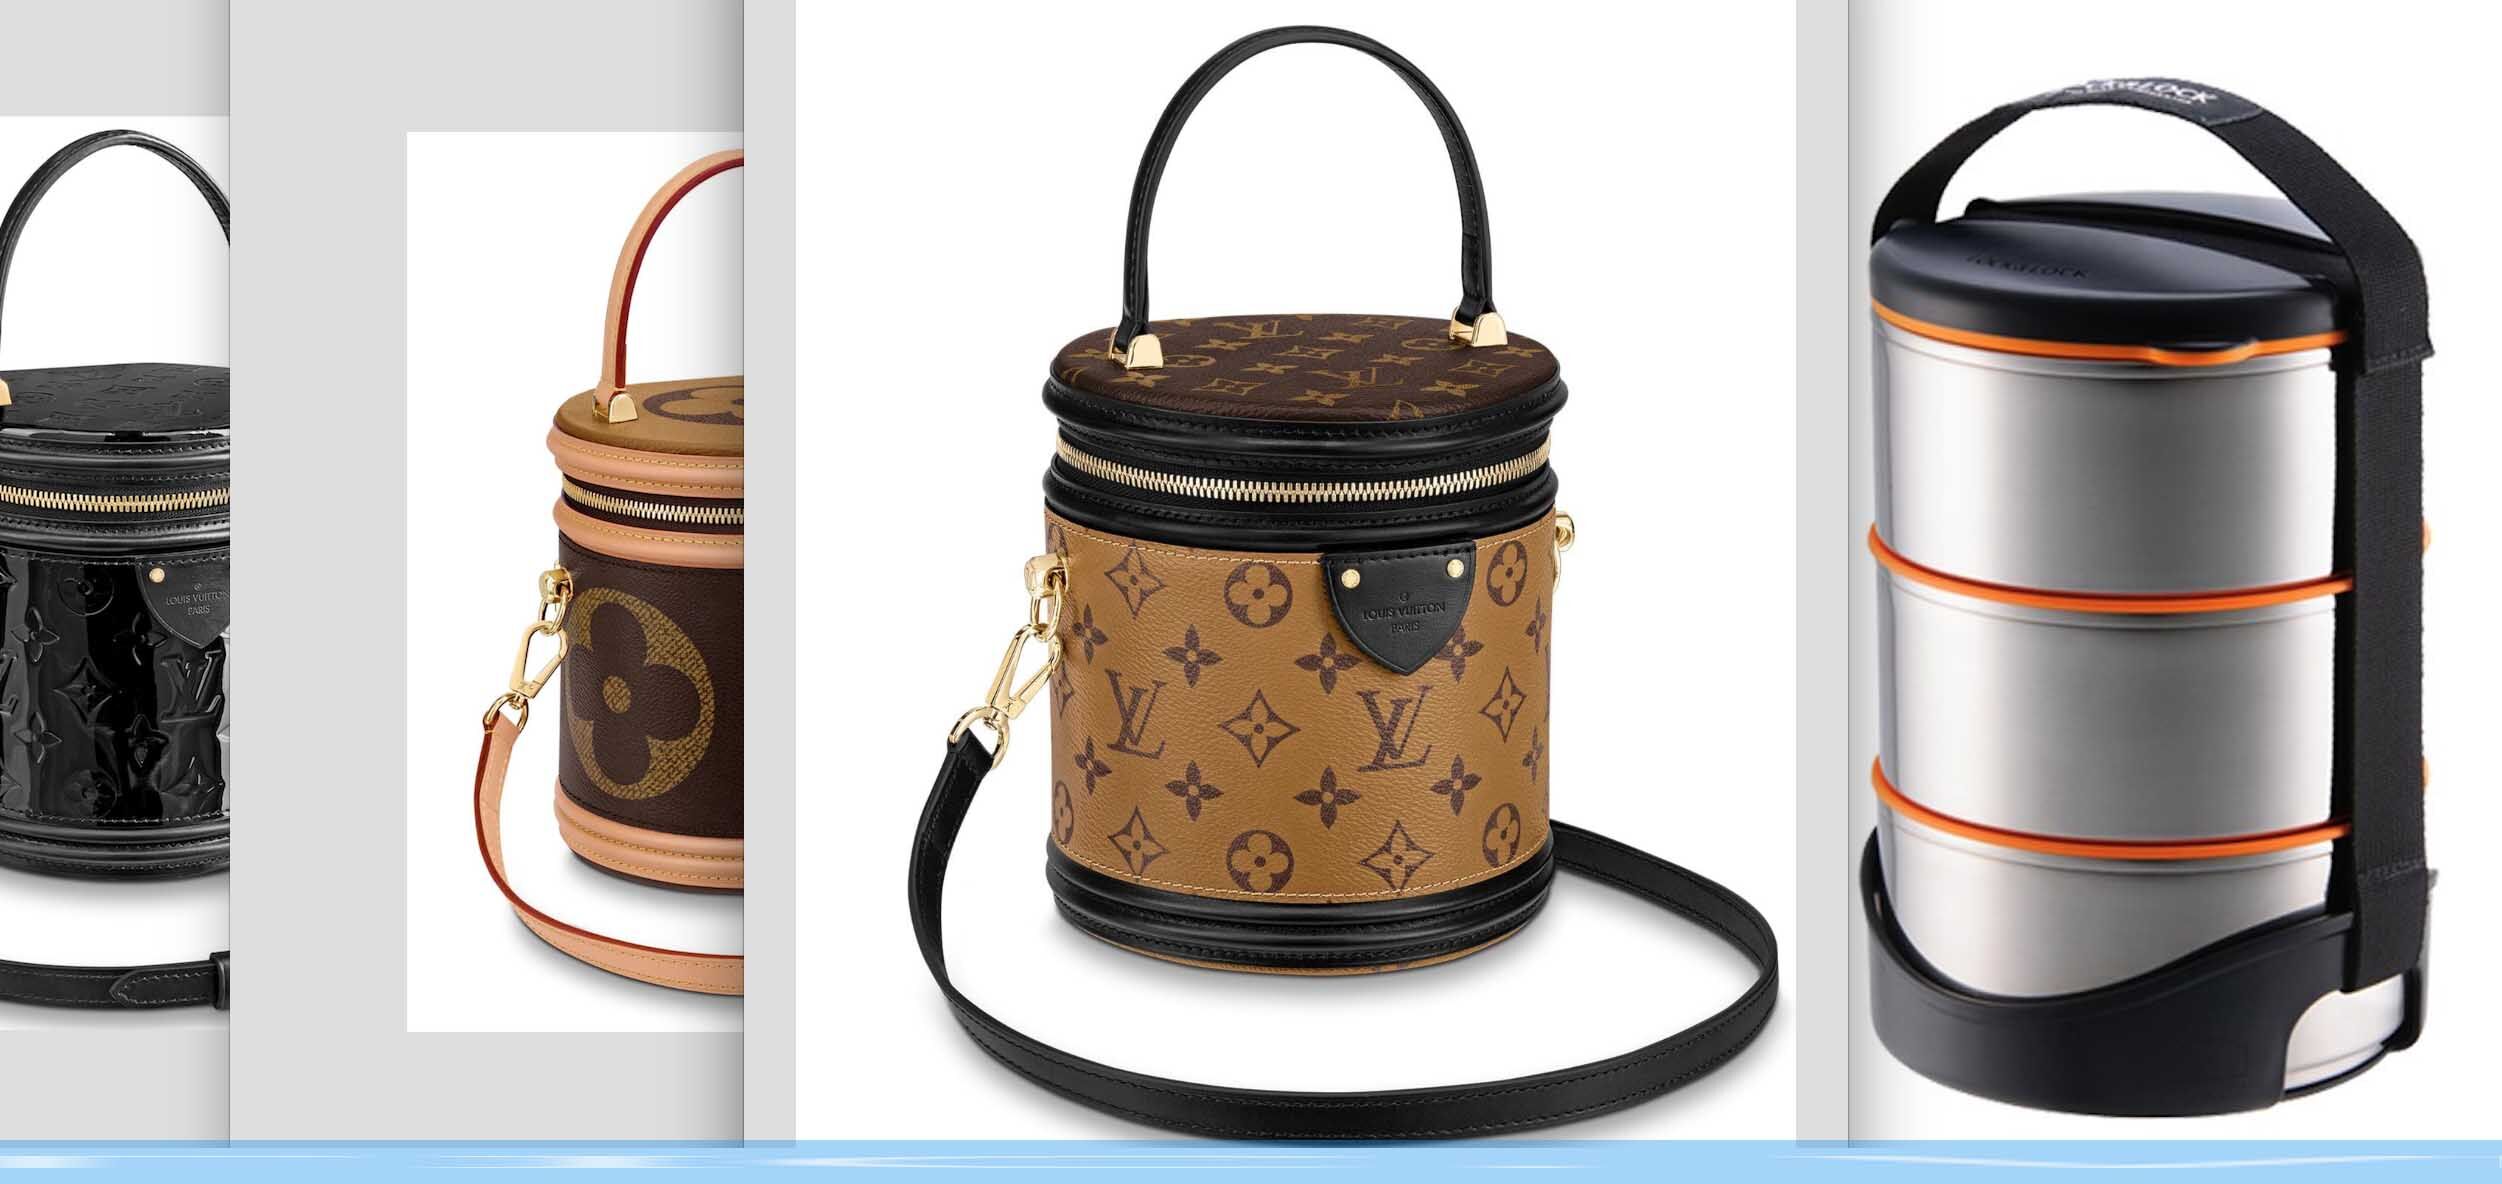 Không chỉ túi máy bay của Louis Vuitton, thế giới hàng hiệu còn nhiều mẫu túi độc lạ hơn thế - 9